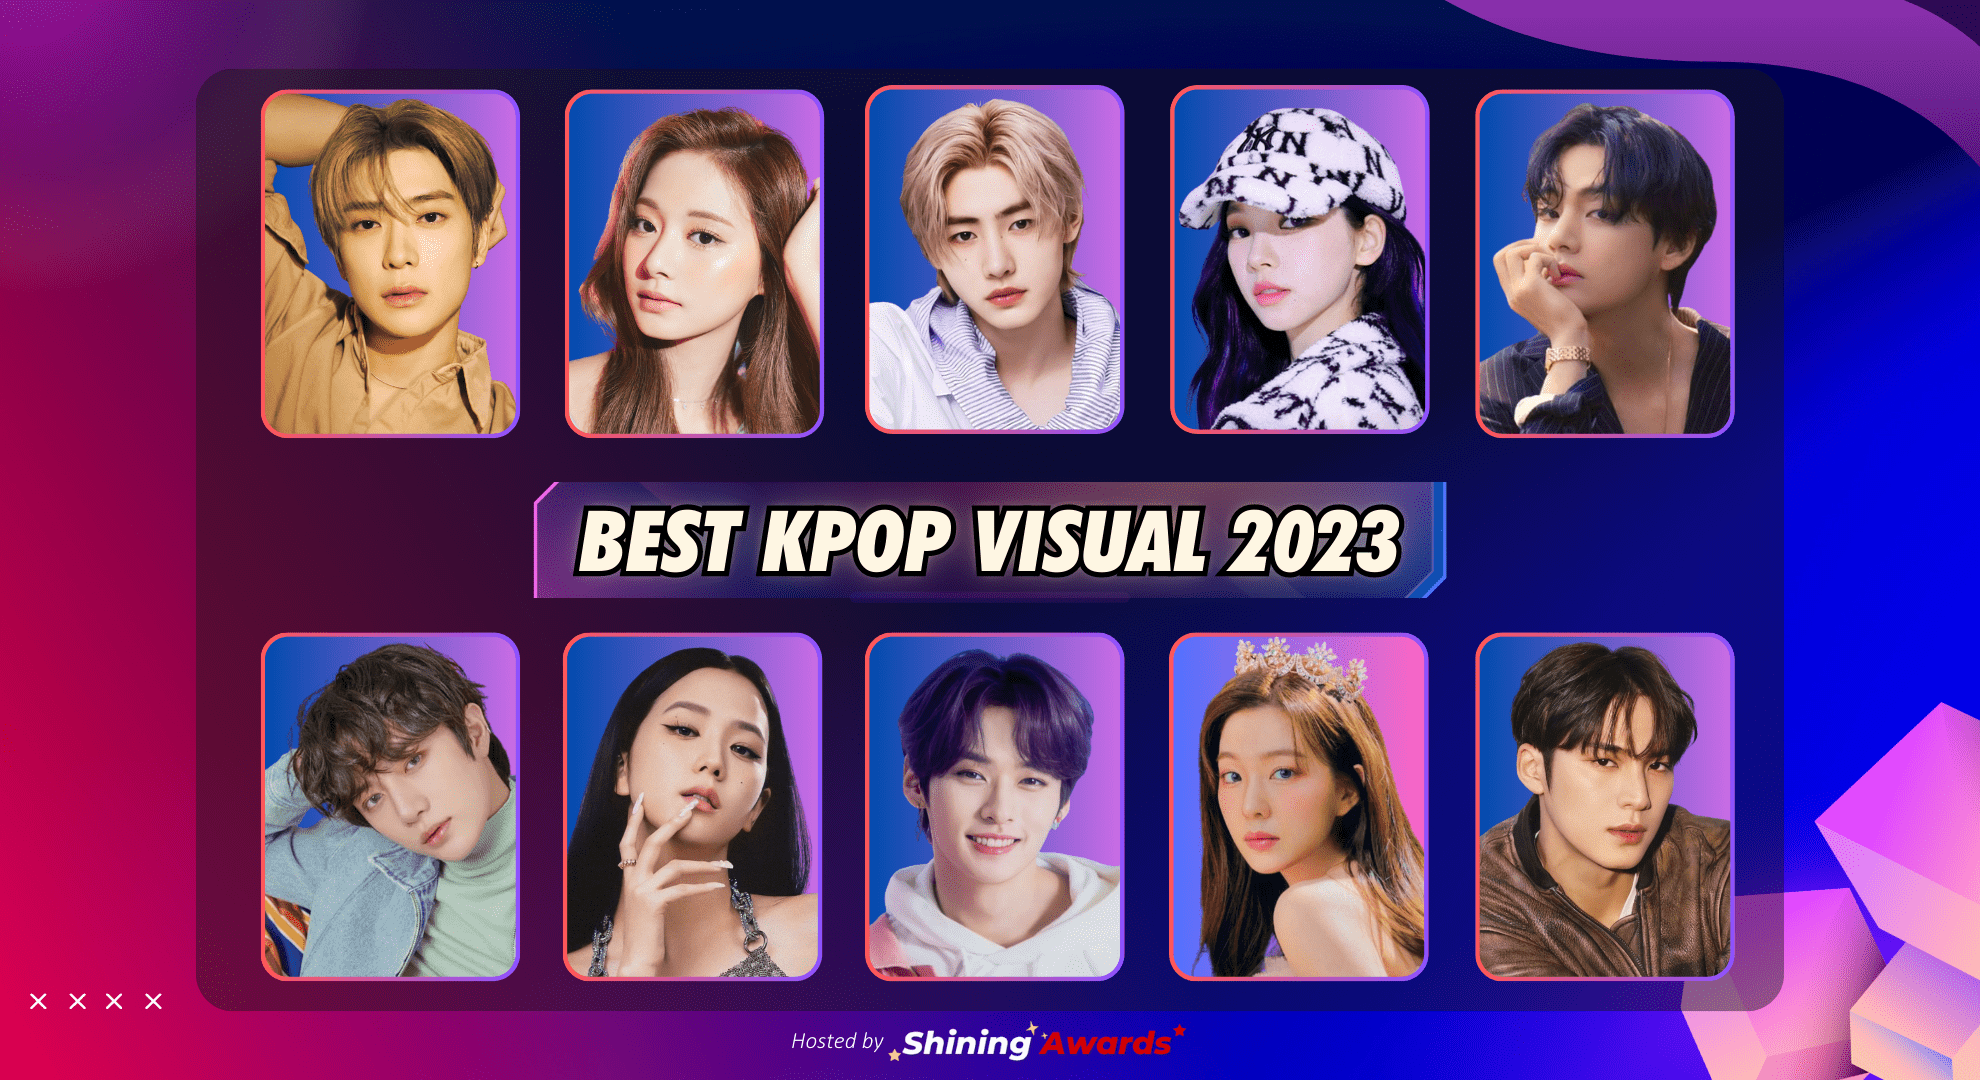 Best Kpop Visual 2023